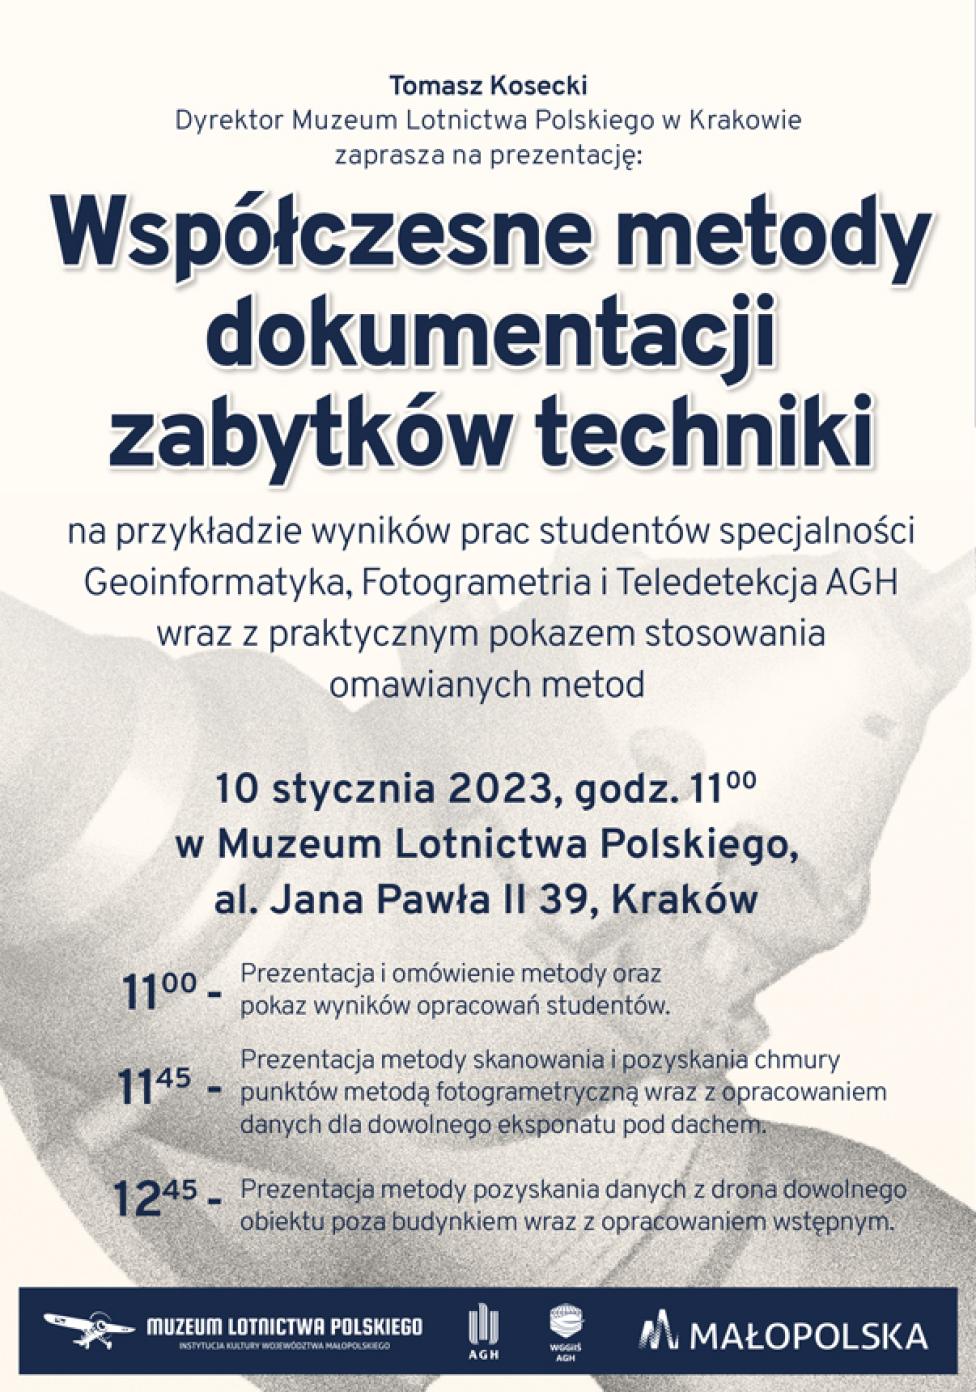 Prezentacja "Współczesne metody dokumentacji zabytków techniki" (fot. Muzeum Lotnictwa Polskiego)